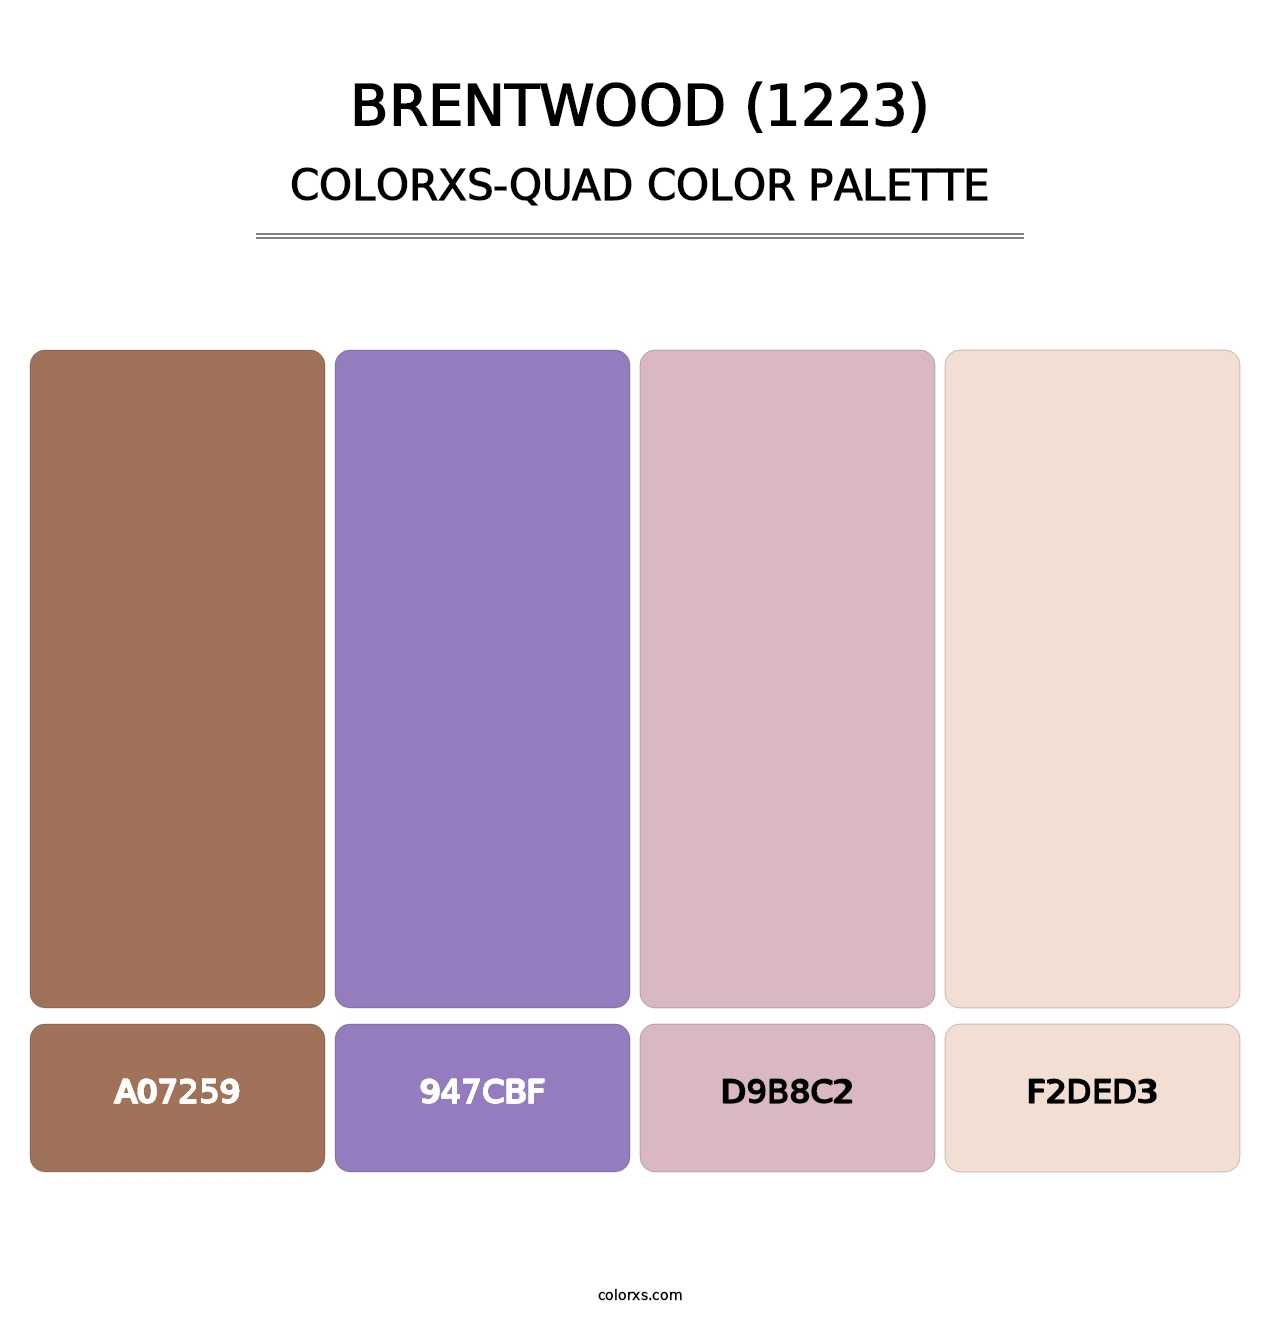 Brentwood (1223) - Colorxs Quad Palette